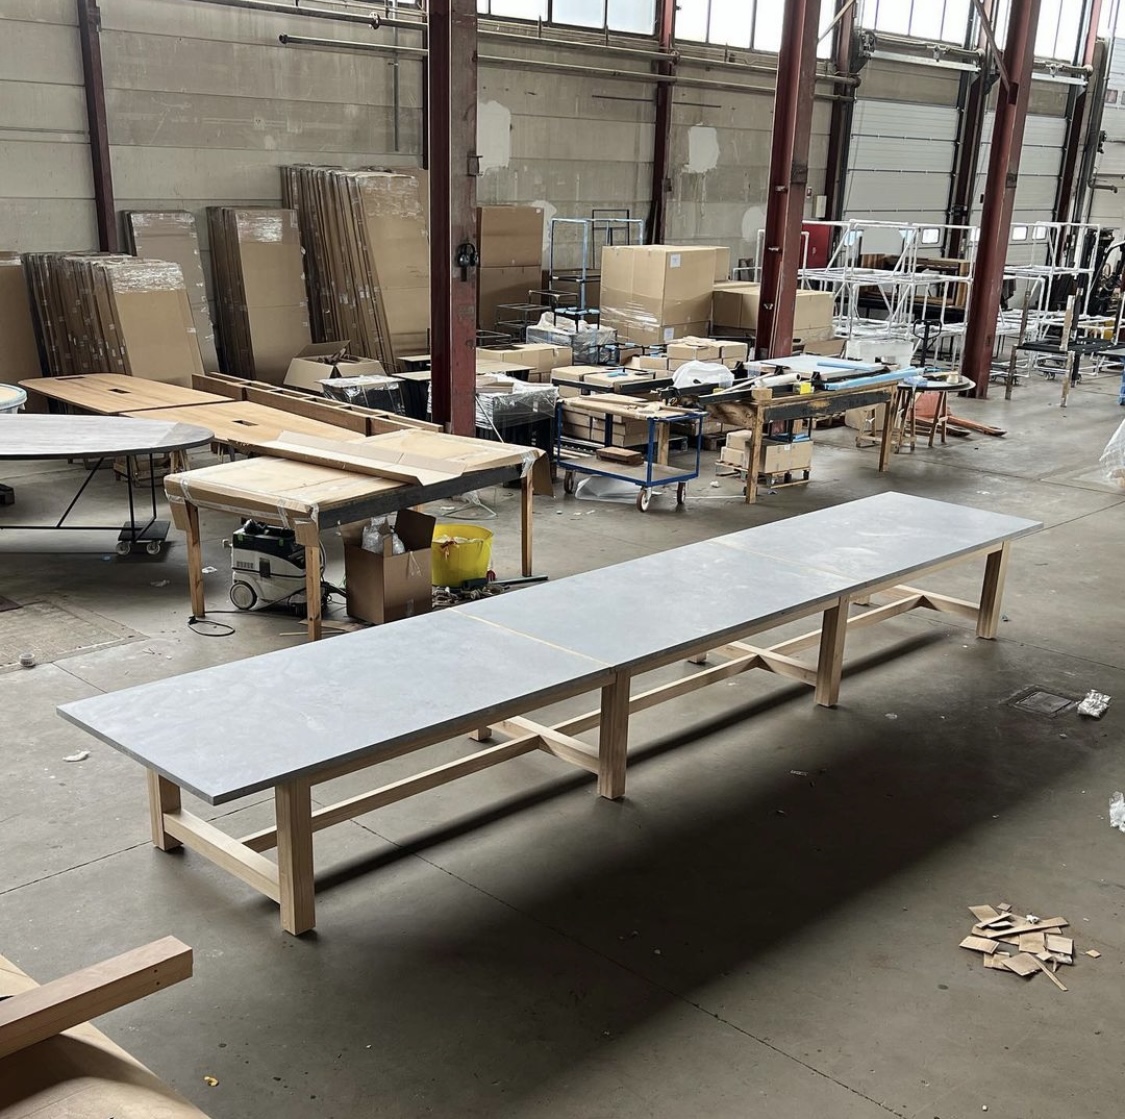 TT Outdoor table:  650 x 120cm